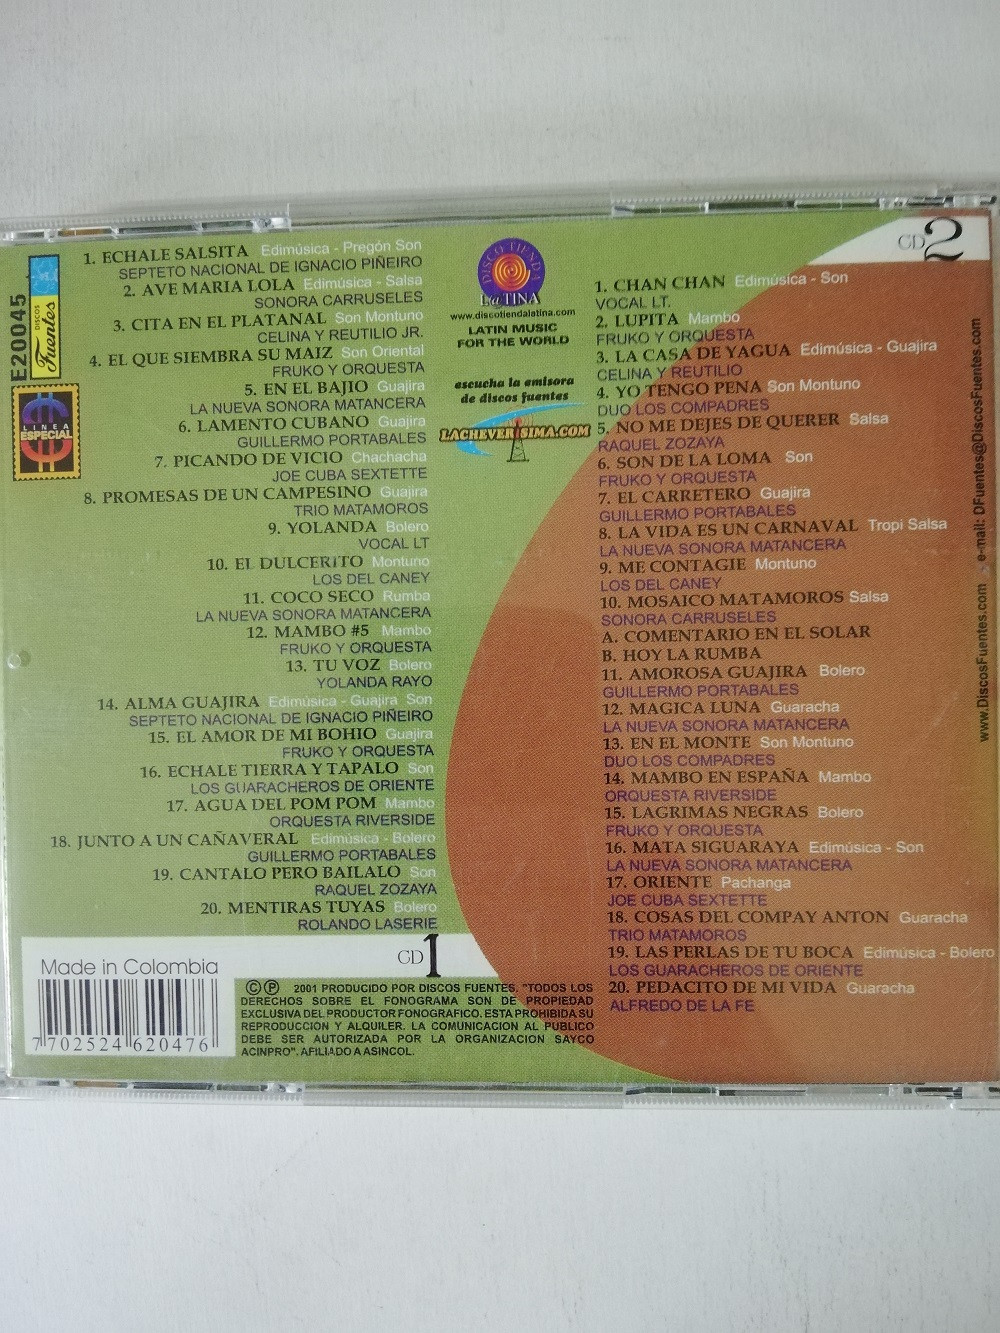 Imagen CD X 2 200 CLÁSICAS DE LA MÚSICA CUBANA VOL. 1 - ECHALE SALSITA... 2